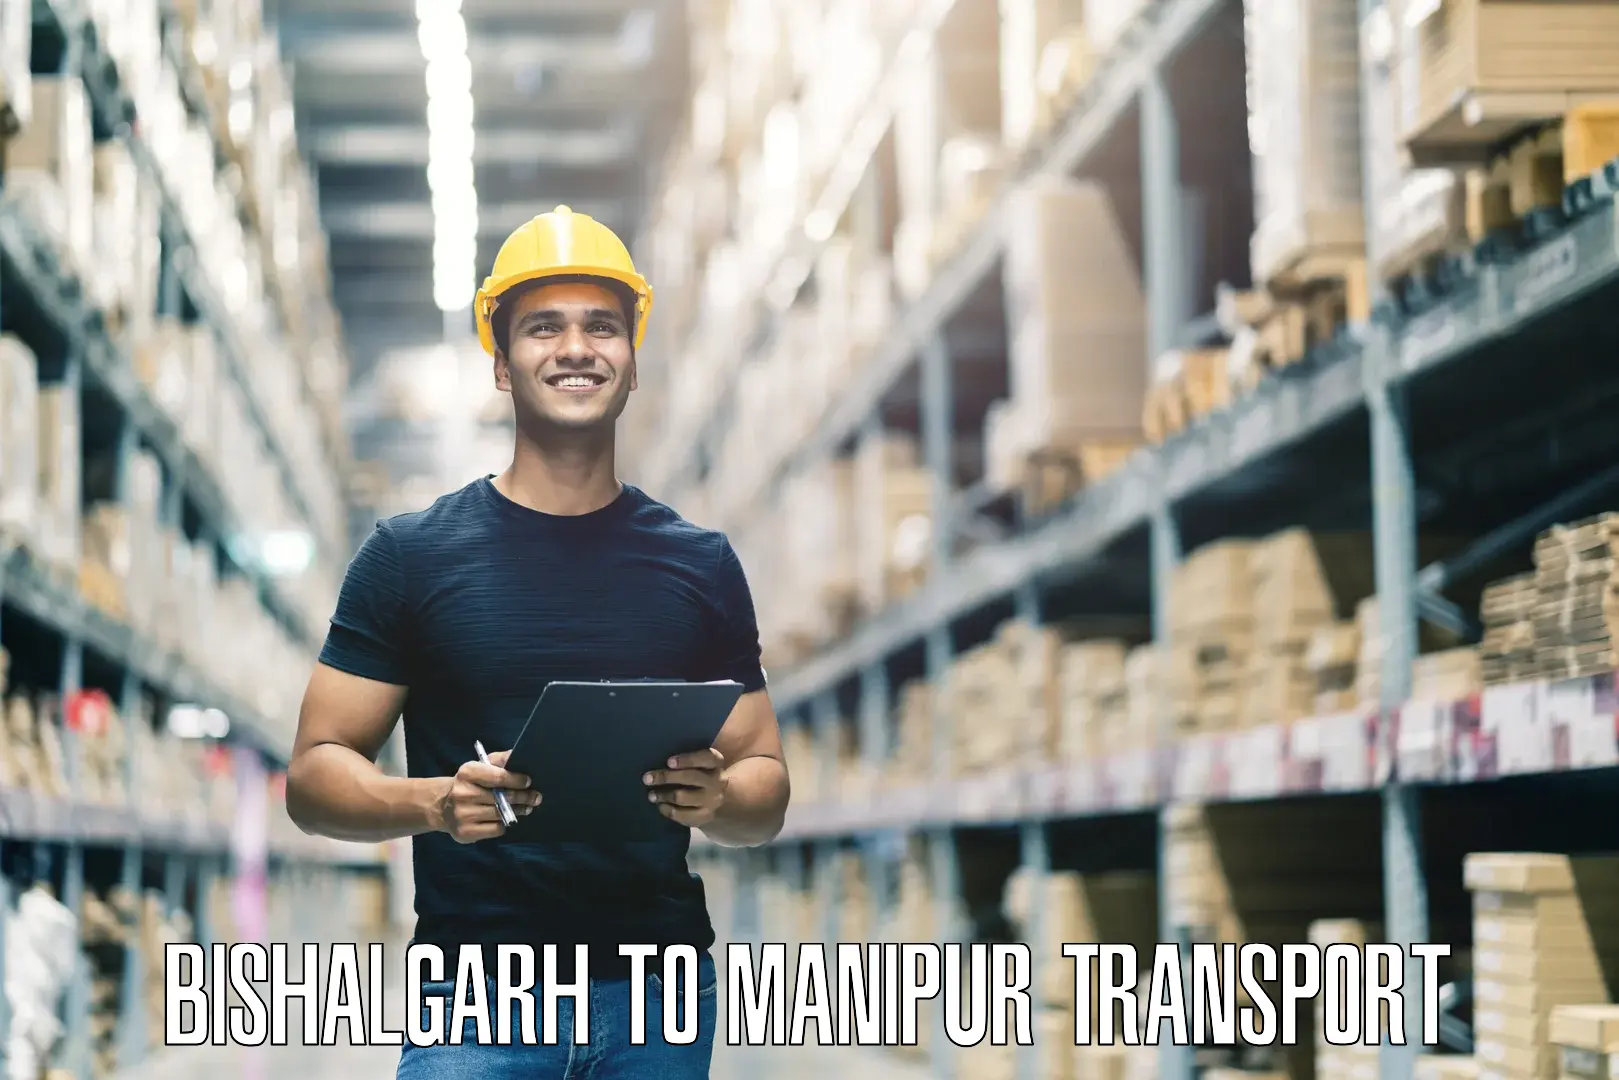 Container transport service Bishalgarh to Churachandpur